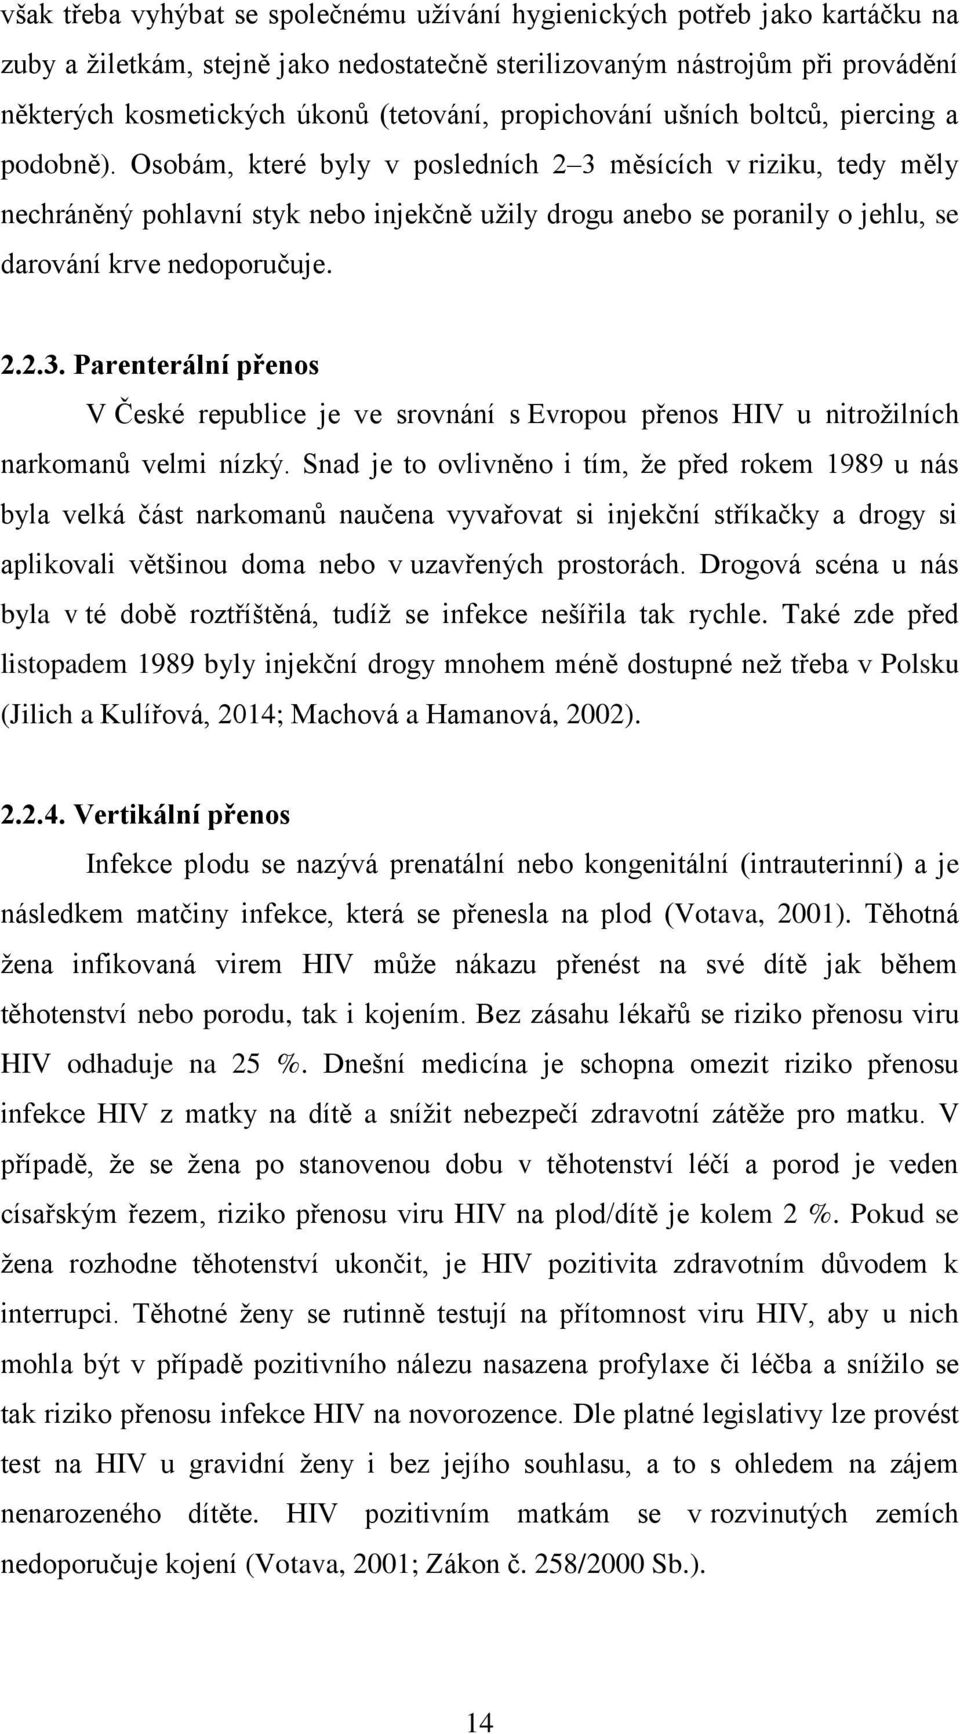 Osobám, které byly v posledních 2 3 měsících v riziku, tedy měly nechráněný pohlavní styk nebo injekčně užily drogu anebo se poranily o jehlu, se darování krve nedoporučuje. 2.2.3. Parenterální přenos V České republice je ve srovnání s Evropou přenos HIV u nitrožilních narkomanů velmi nízký.